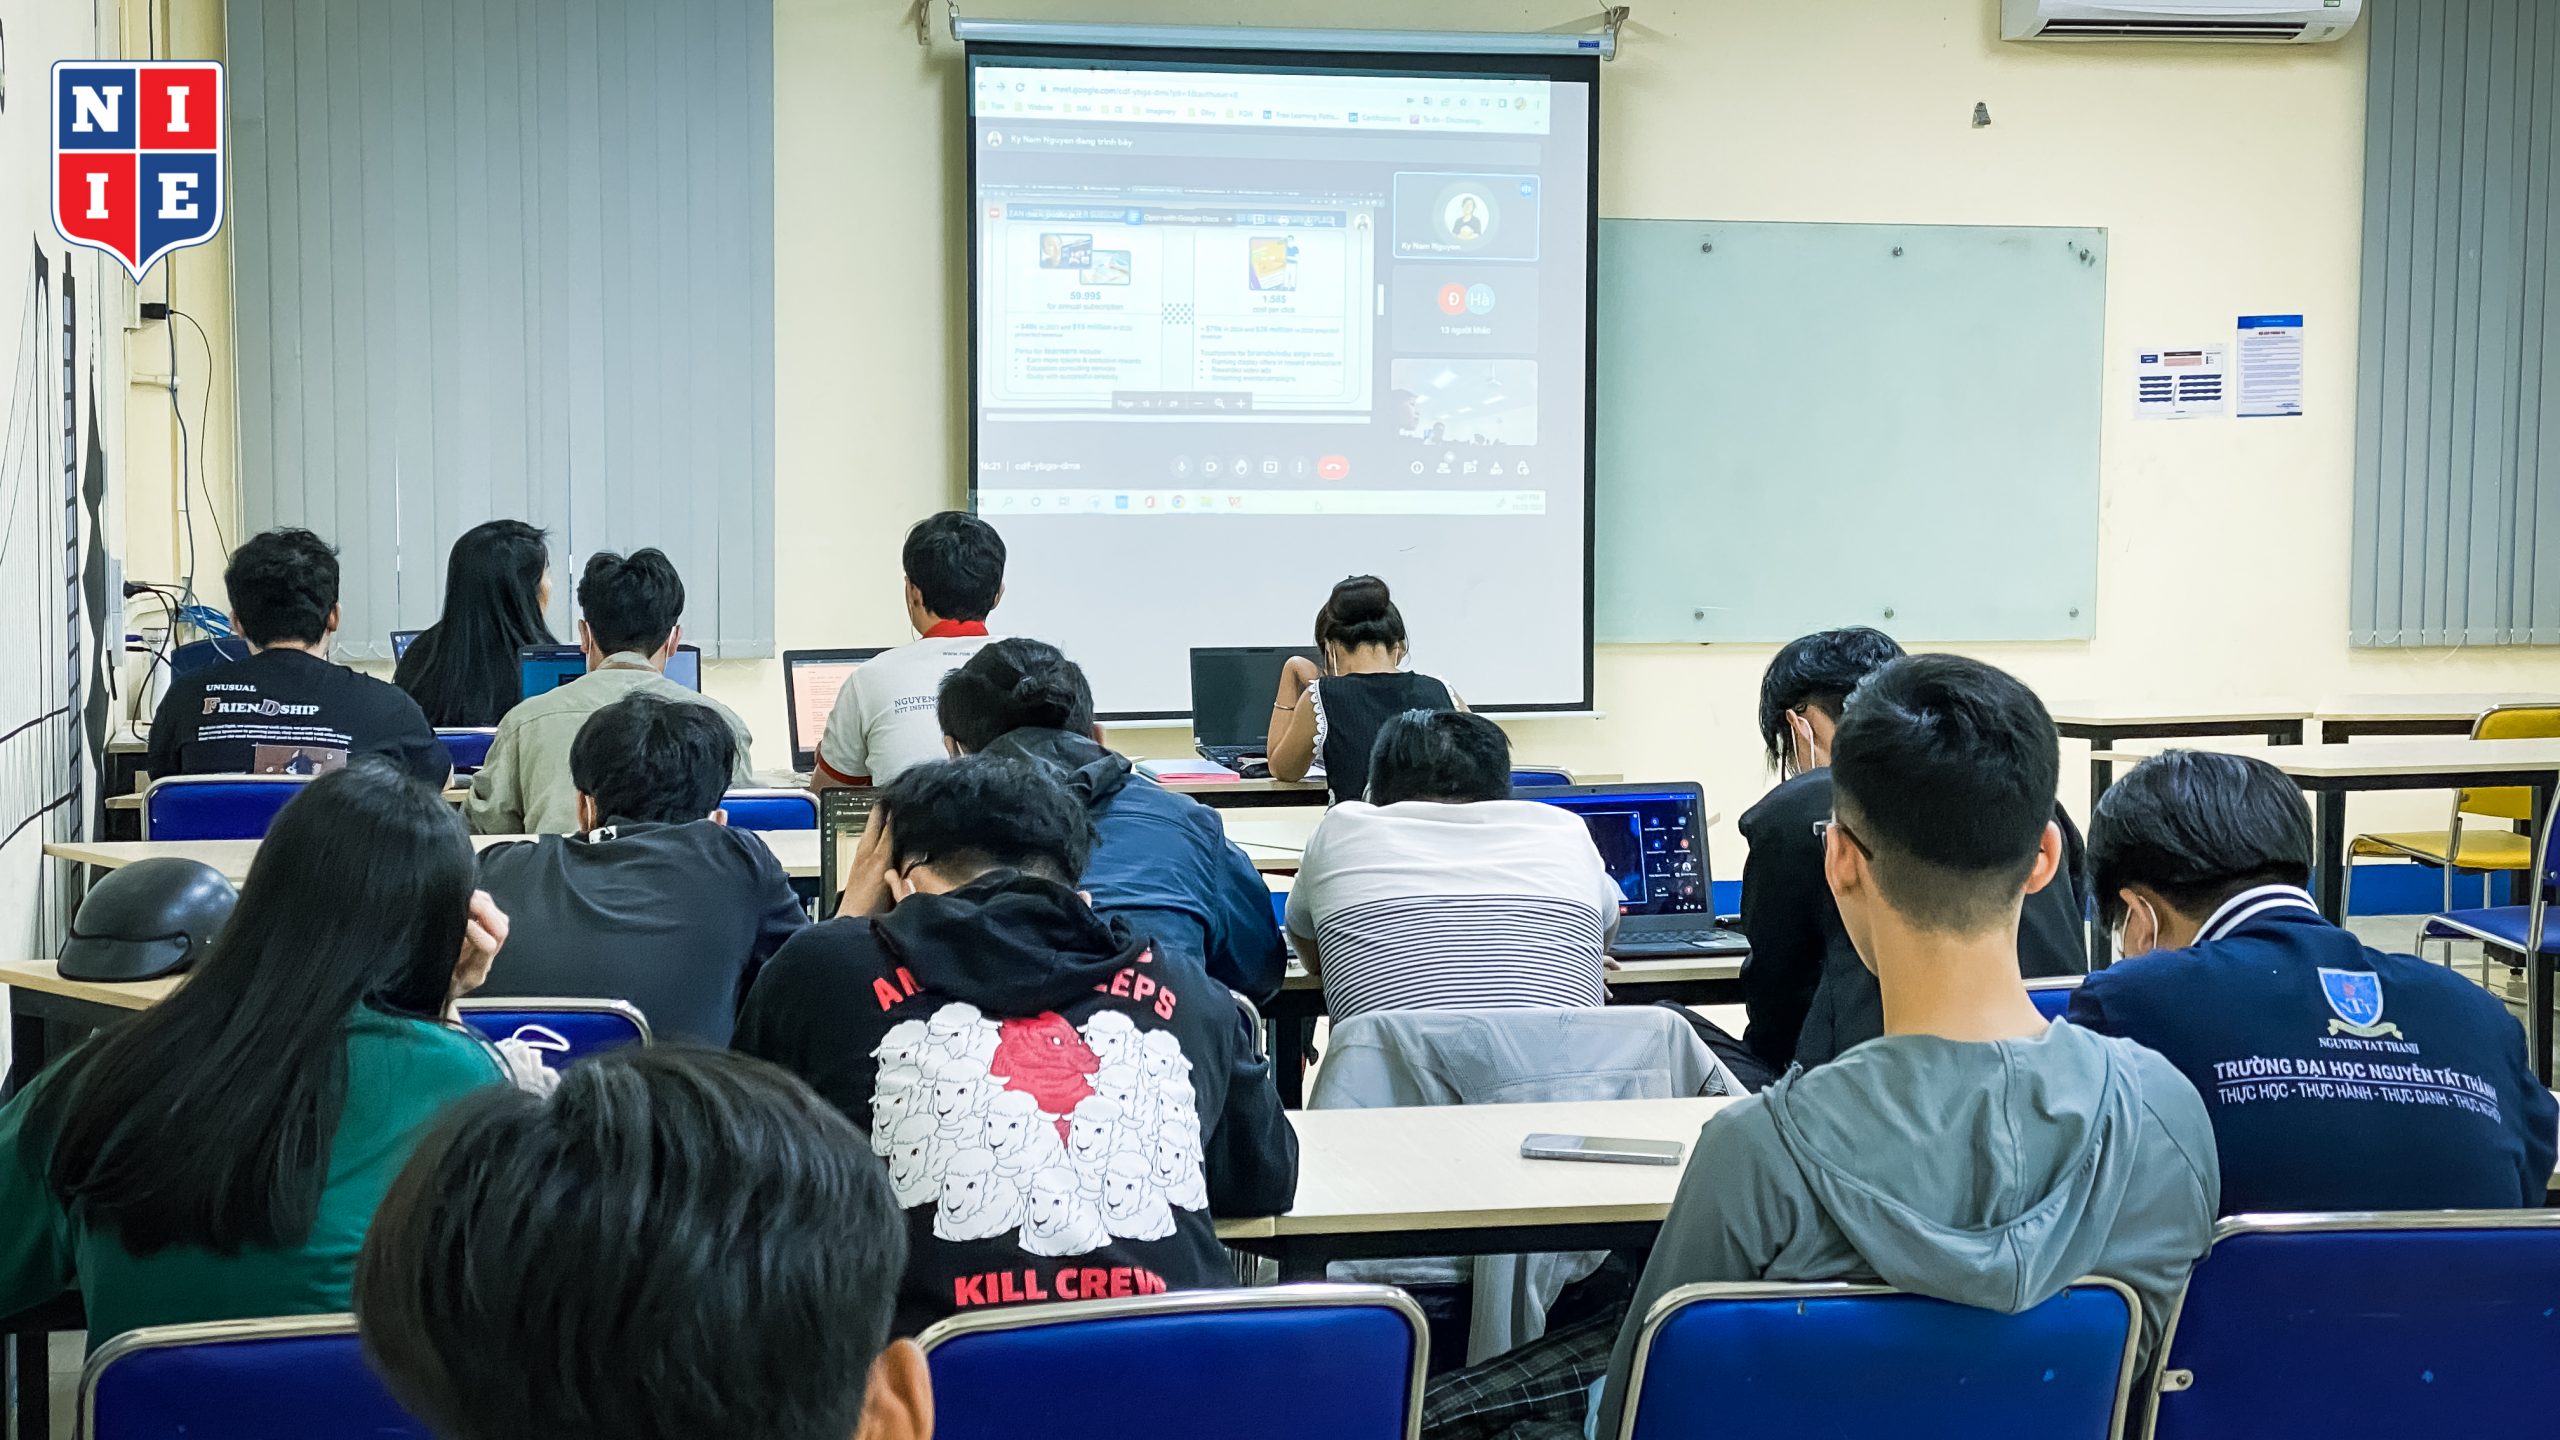 Hiện tại, anh Nguyễn Kỳ Nam làm việc chủ yếu ở Hong Kong nên buổi hội thảo được diễn ra theo hình thức trực tuyến